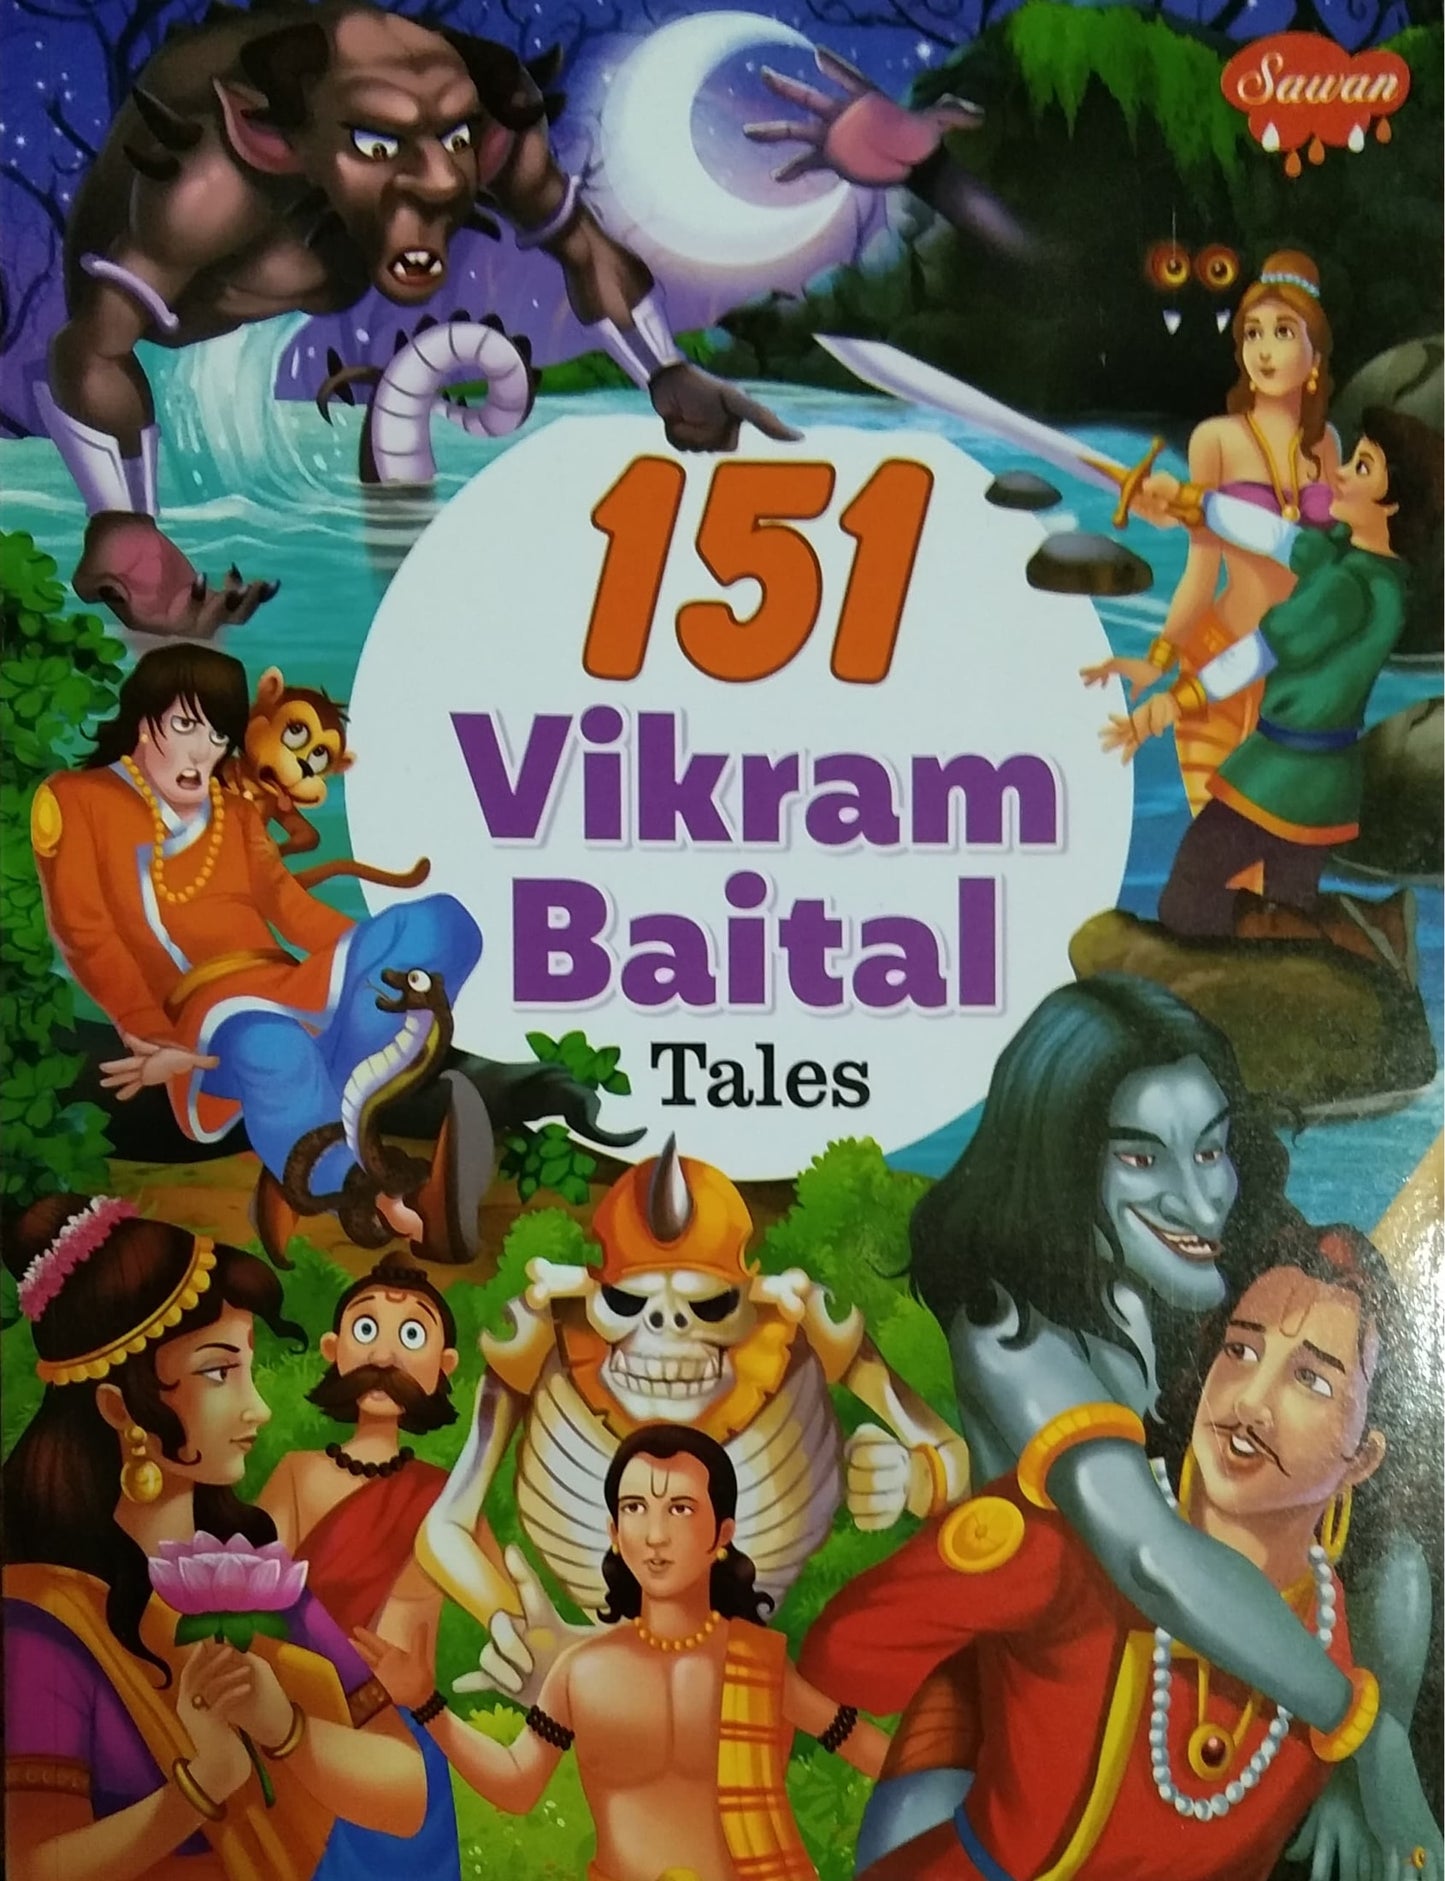 151 Vikram Baital Tales